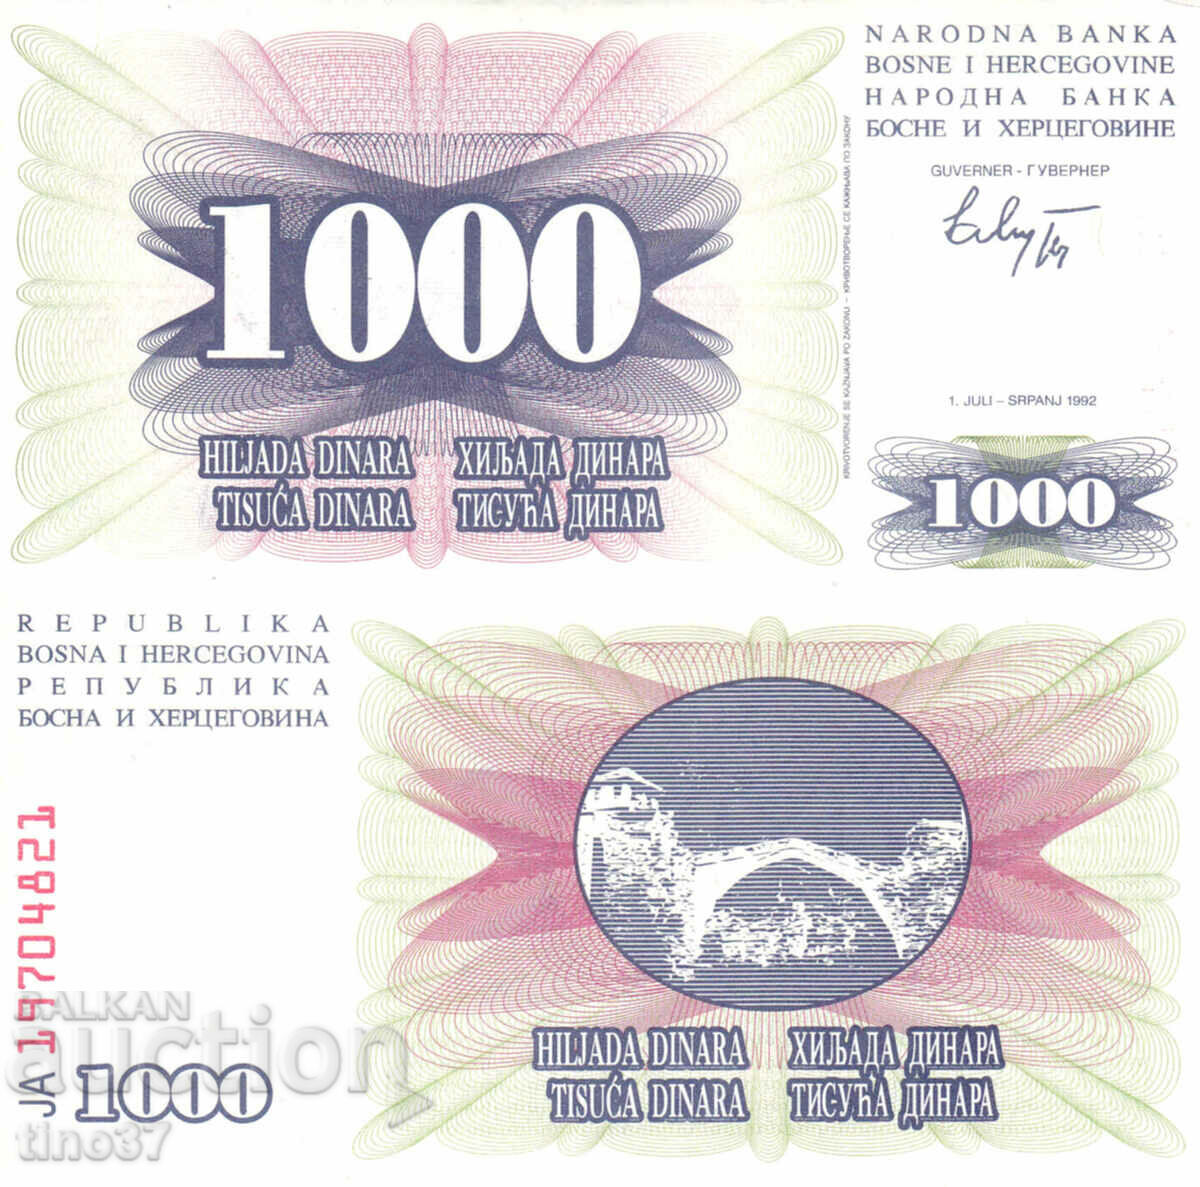 tino37- BOSNIA AND HERZEGOVINA - 1000 DINARS - 1992 - UNC